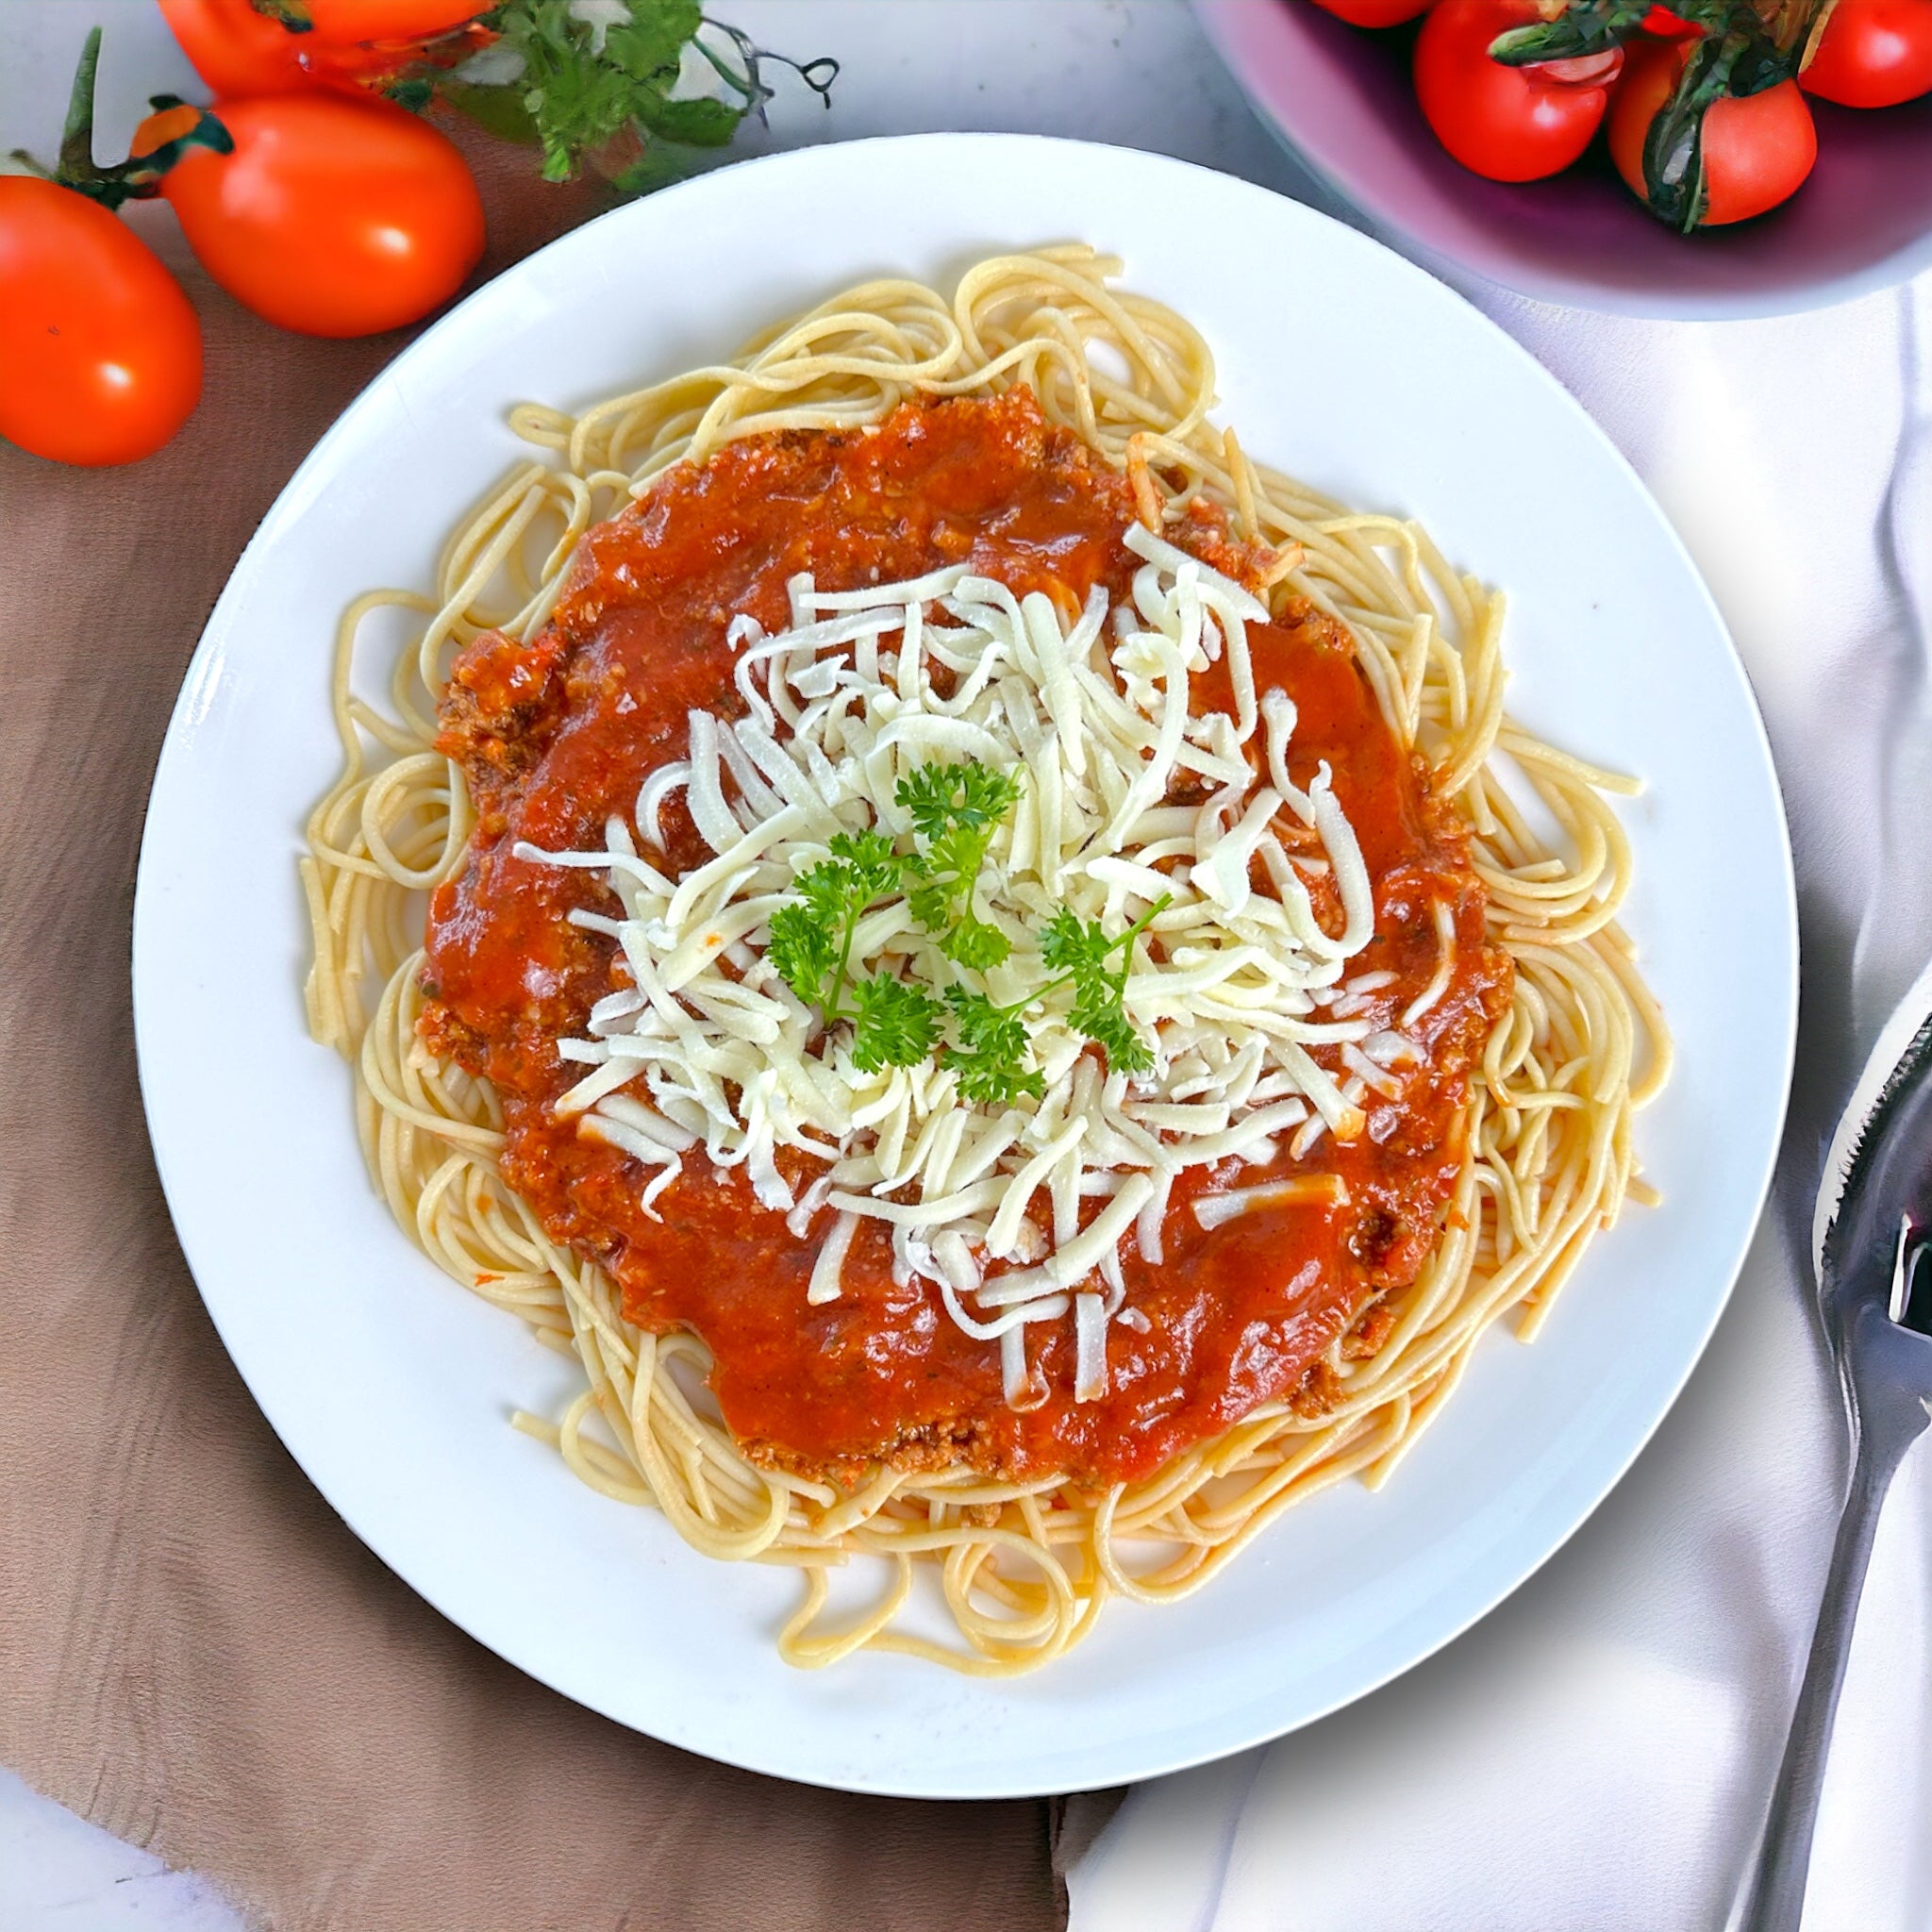 Spaghetti & Turkey sauce